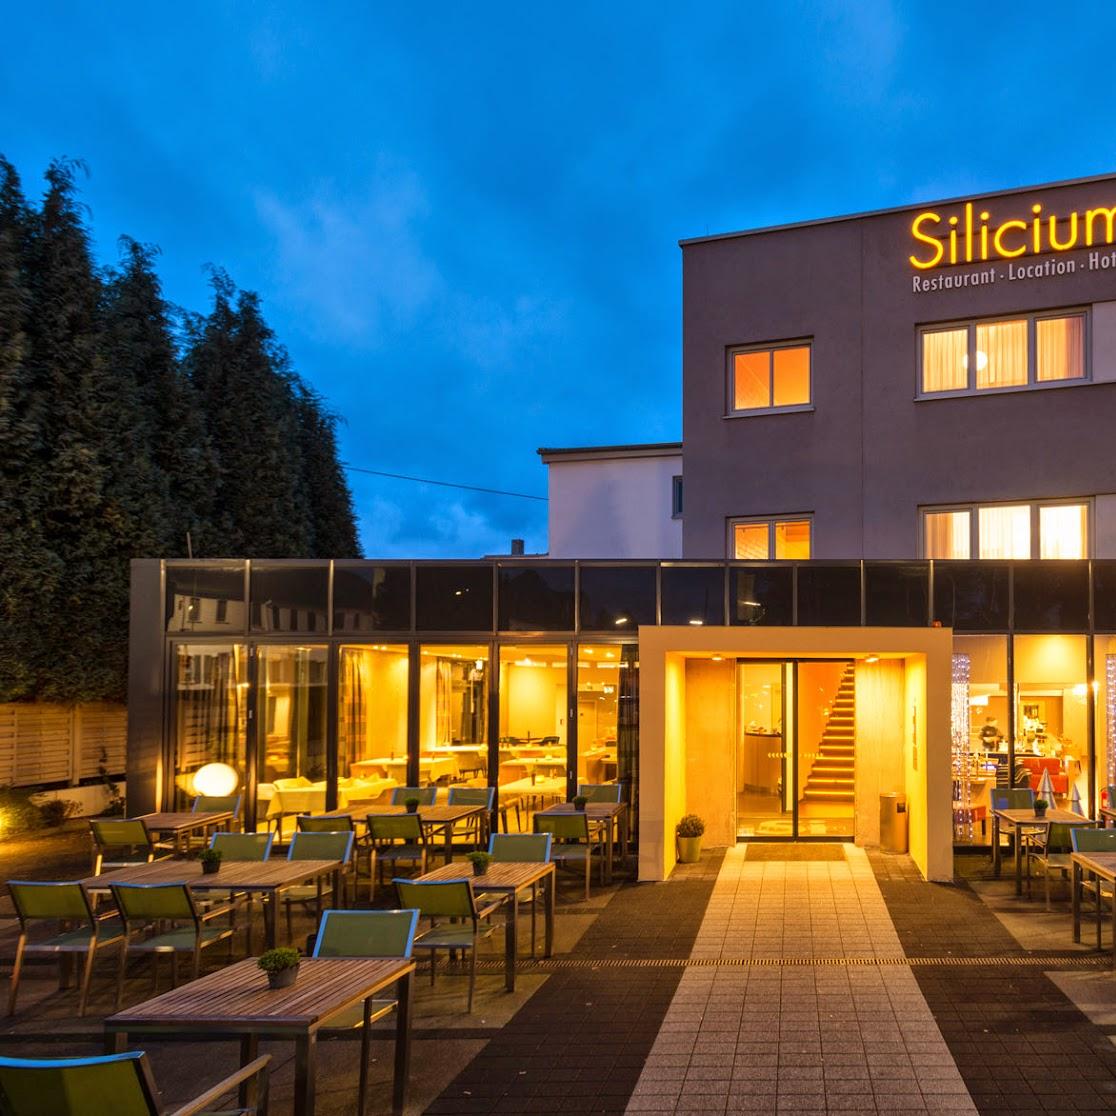 Restaurant "Hotel Silicium" in  Höhr-Grenzhausen